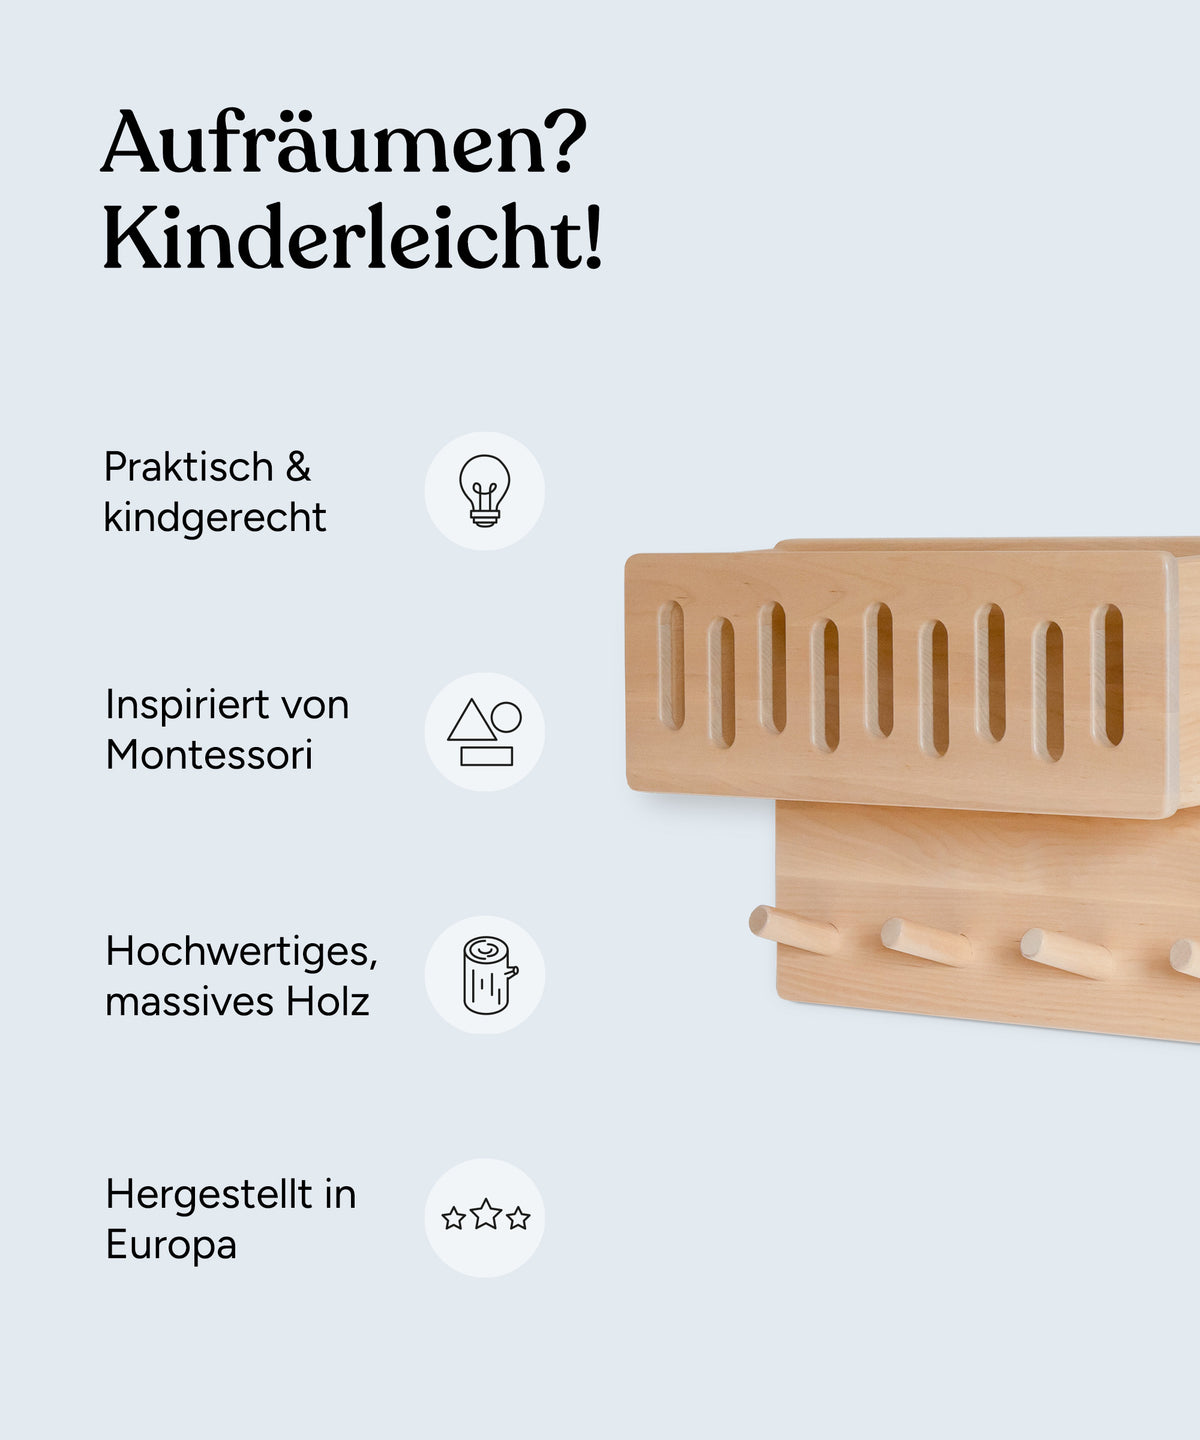 Vorteile der Kindergarderobe: Praktisch und windgerecht, inspiriert von Montessori, hochwertiges und massives Holz, hergestellt in Europa.